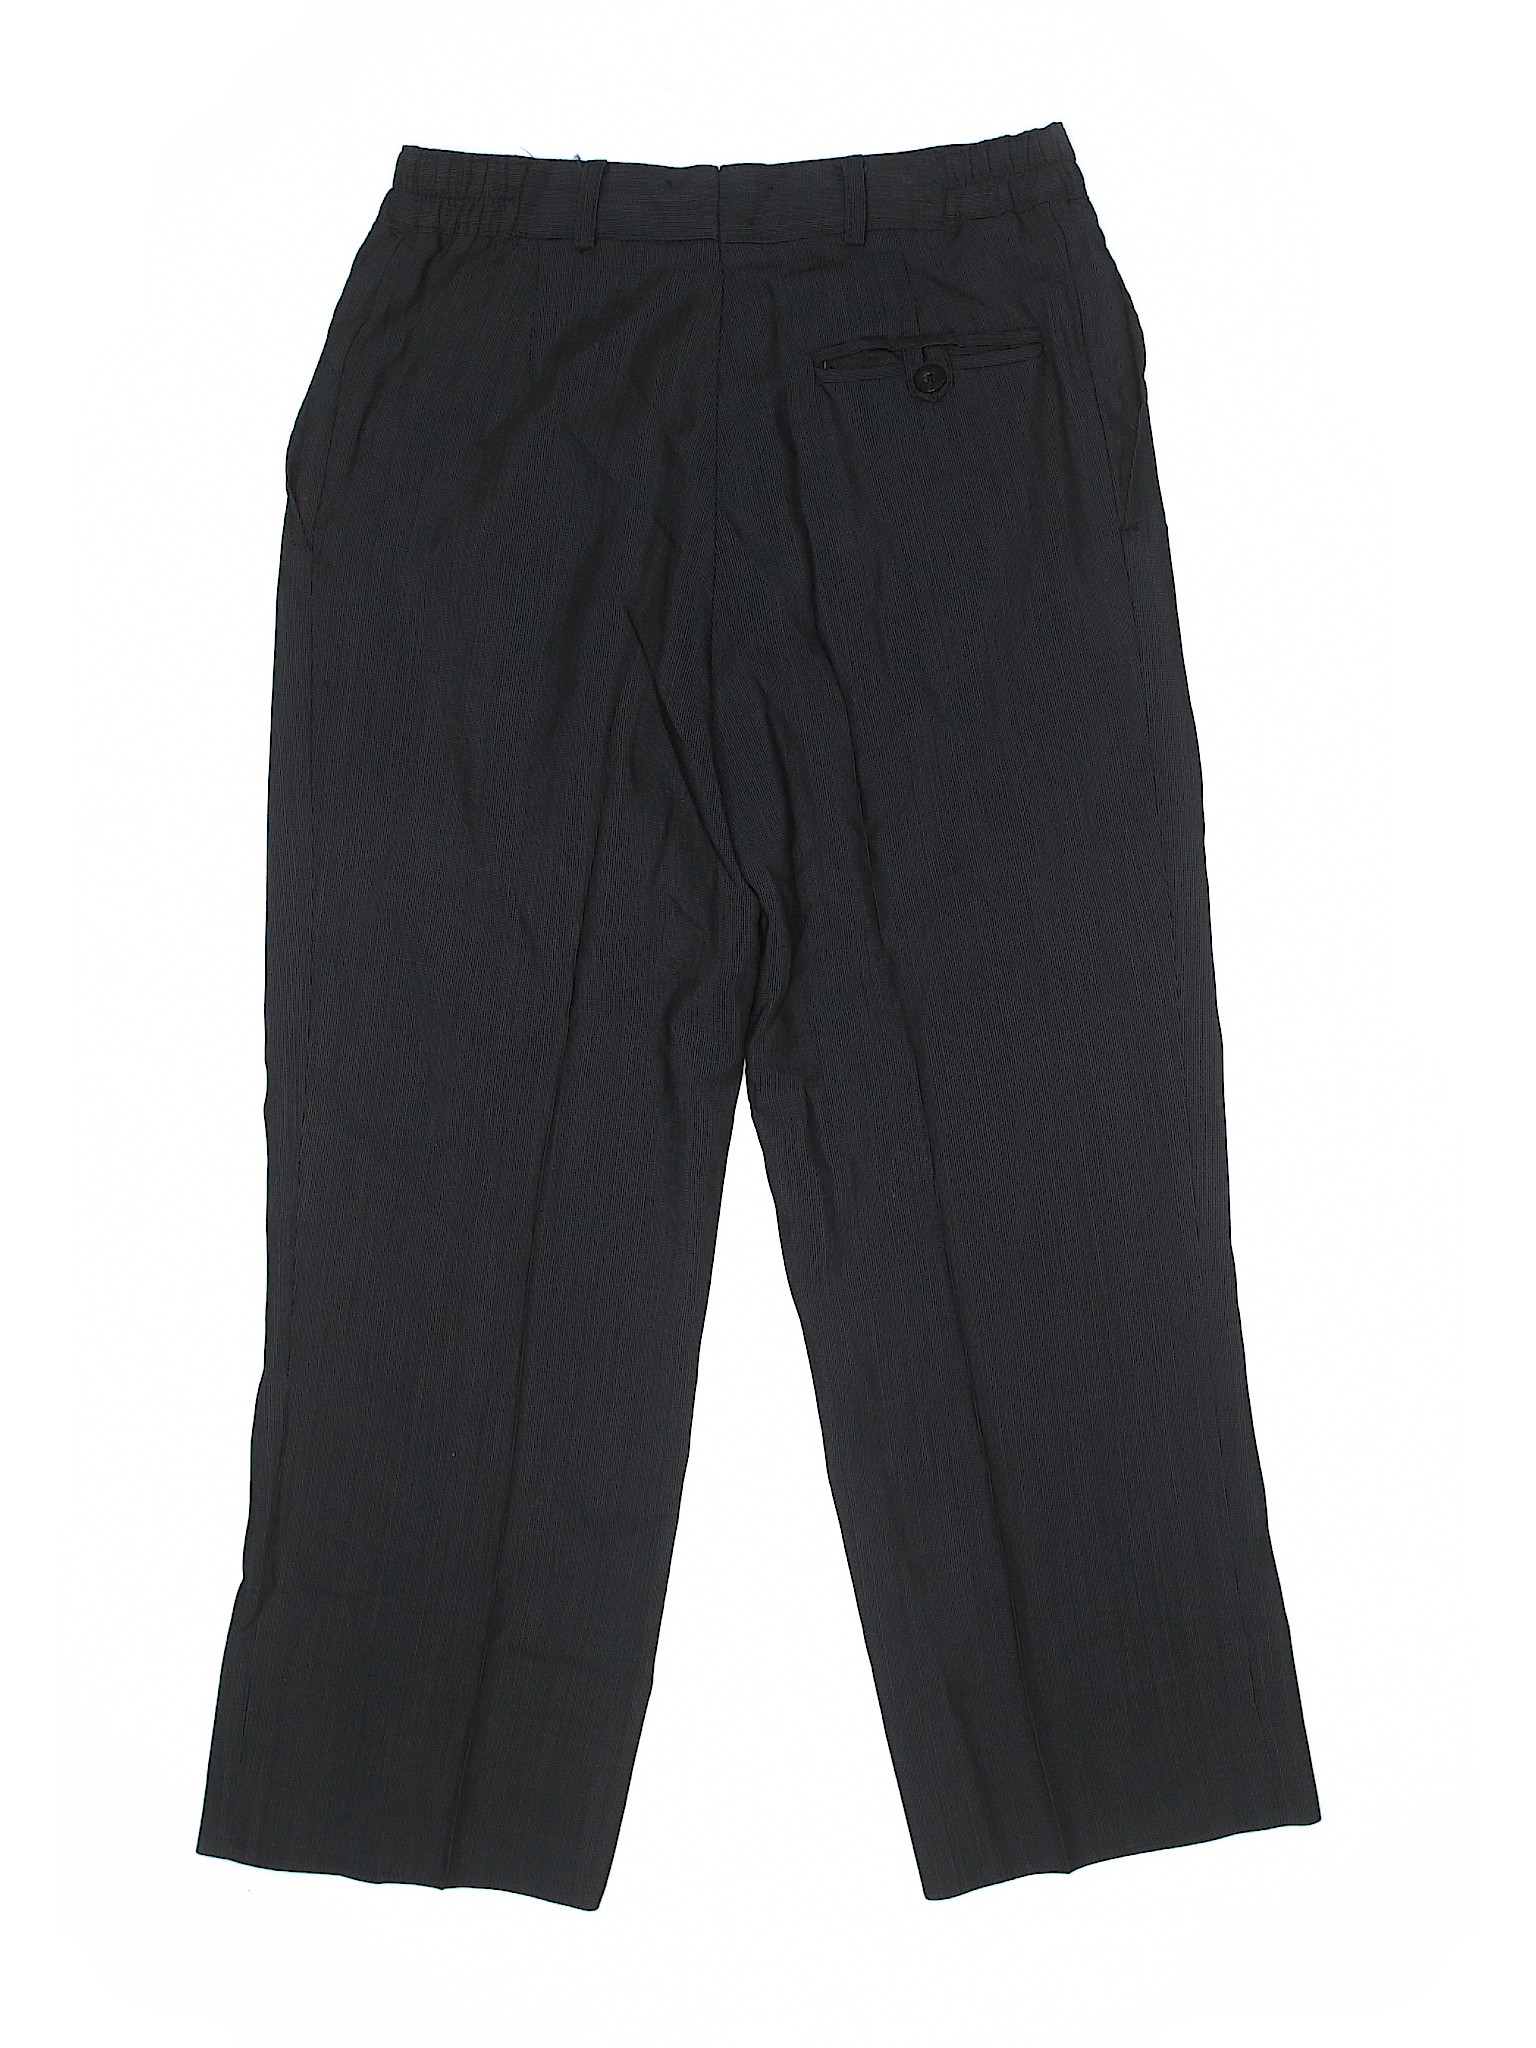 Unbranded Boys Black Wool Pants 14 | eBay